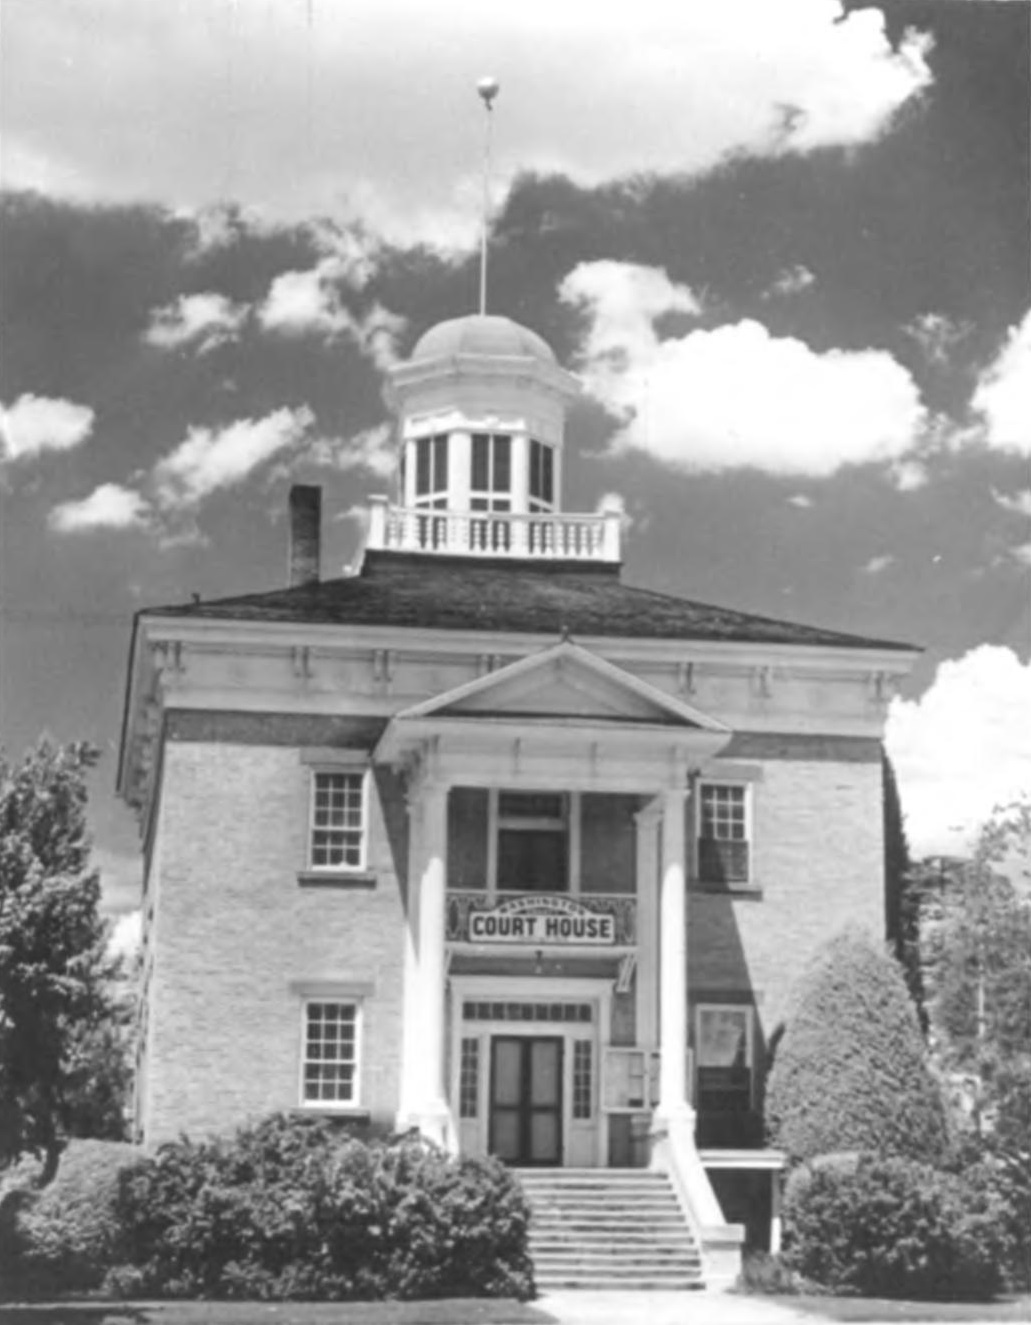 Old Washington County Courthouse